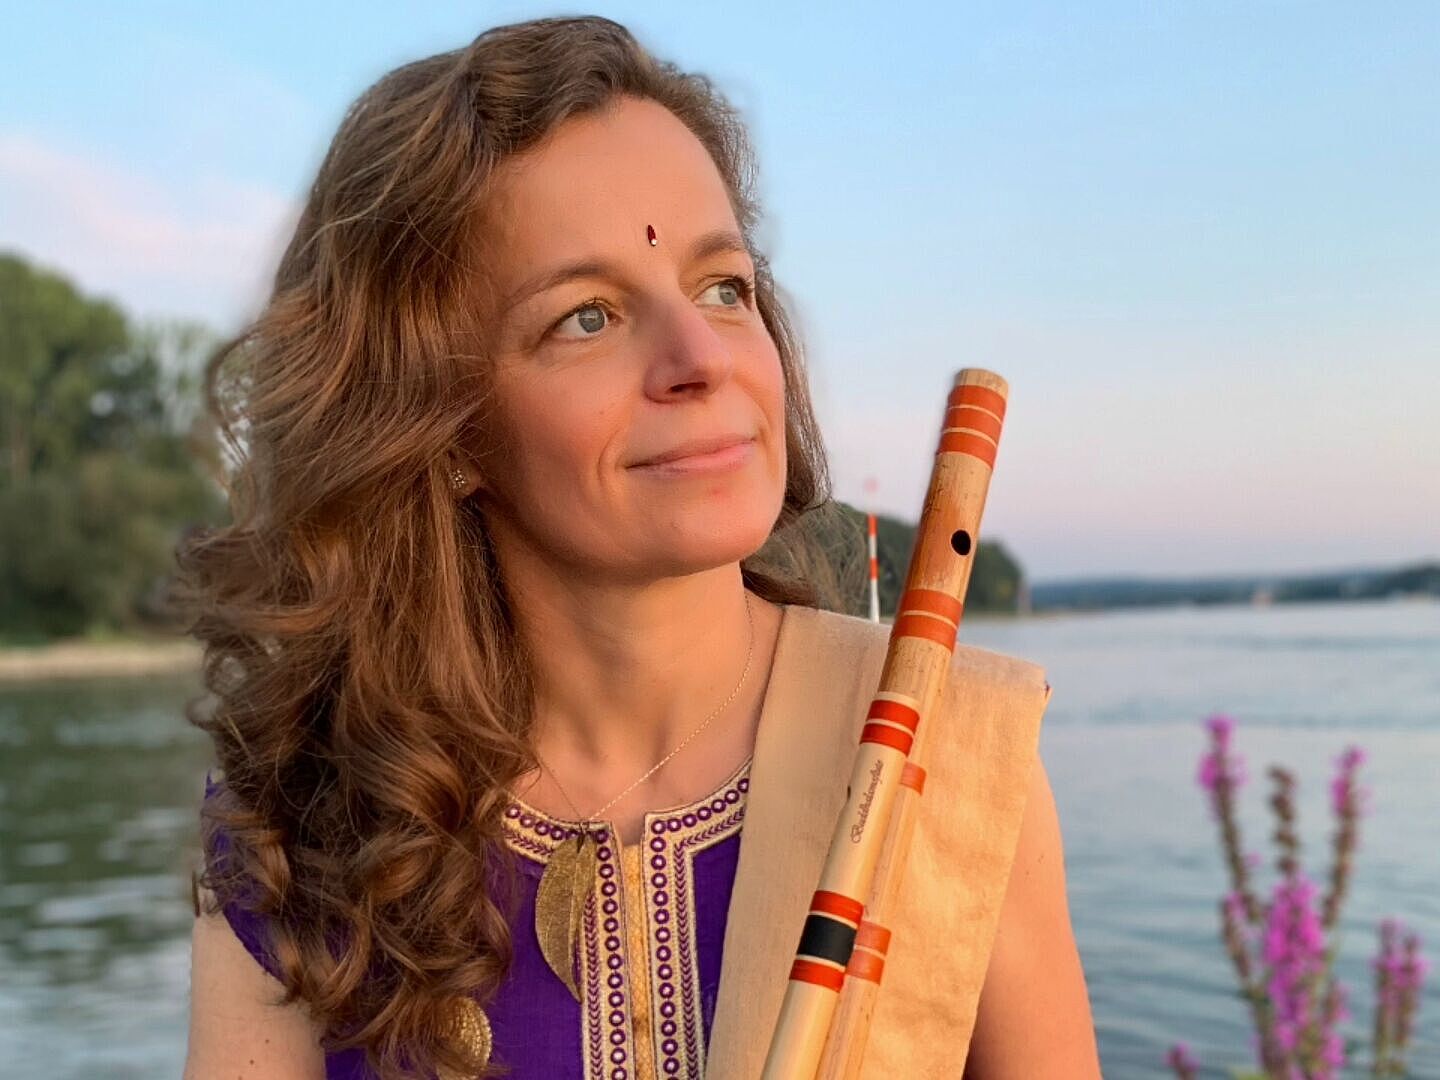 Stephanie Bosch, Bansuri-Flötistin und eine der führenden Vertreterinnen indischer Musik in Europa